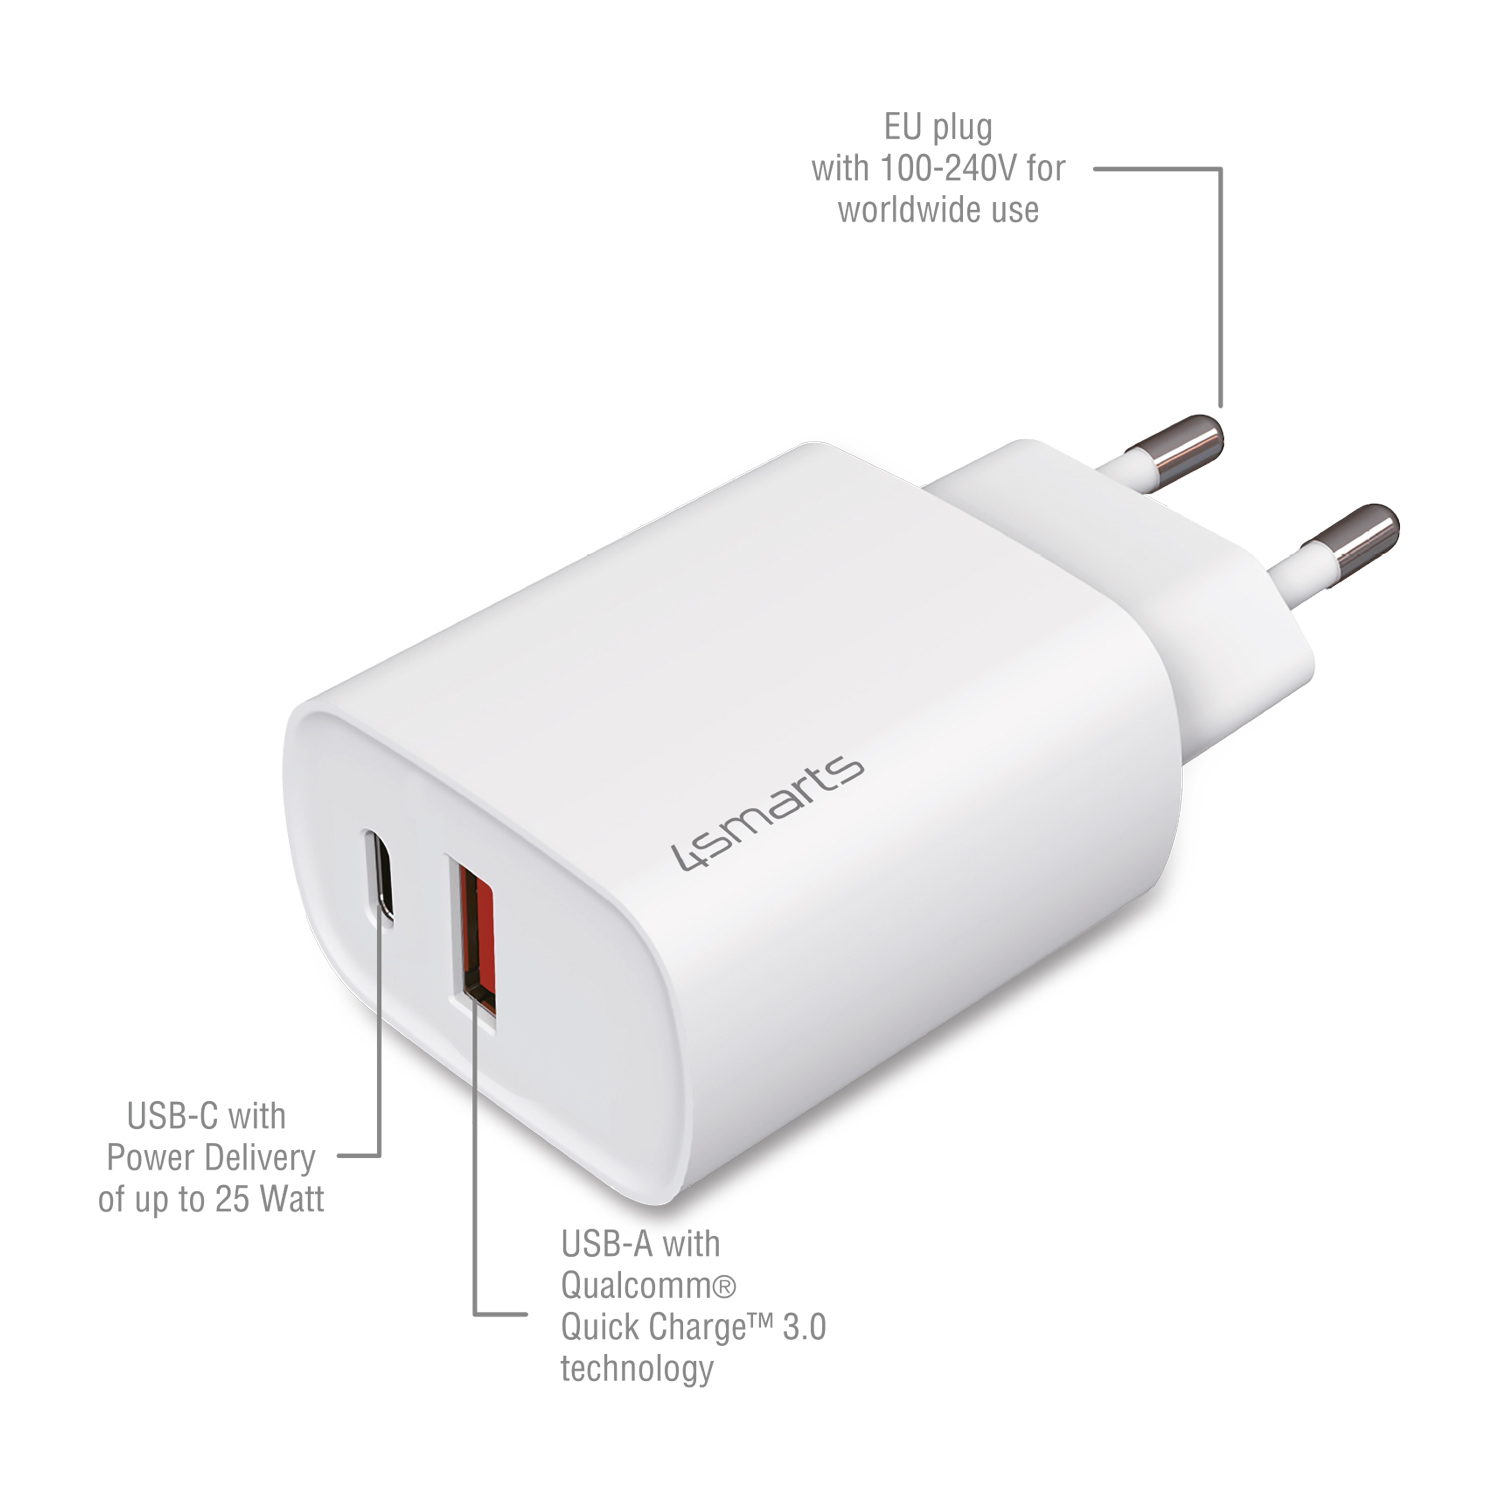 Riet radium Conclusie iPhone duo USB/USB-C adapter 25W (gecertificeerd) kopen? - Morgen in huis |  Partly